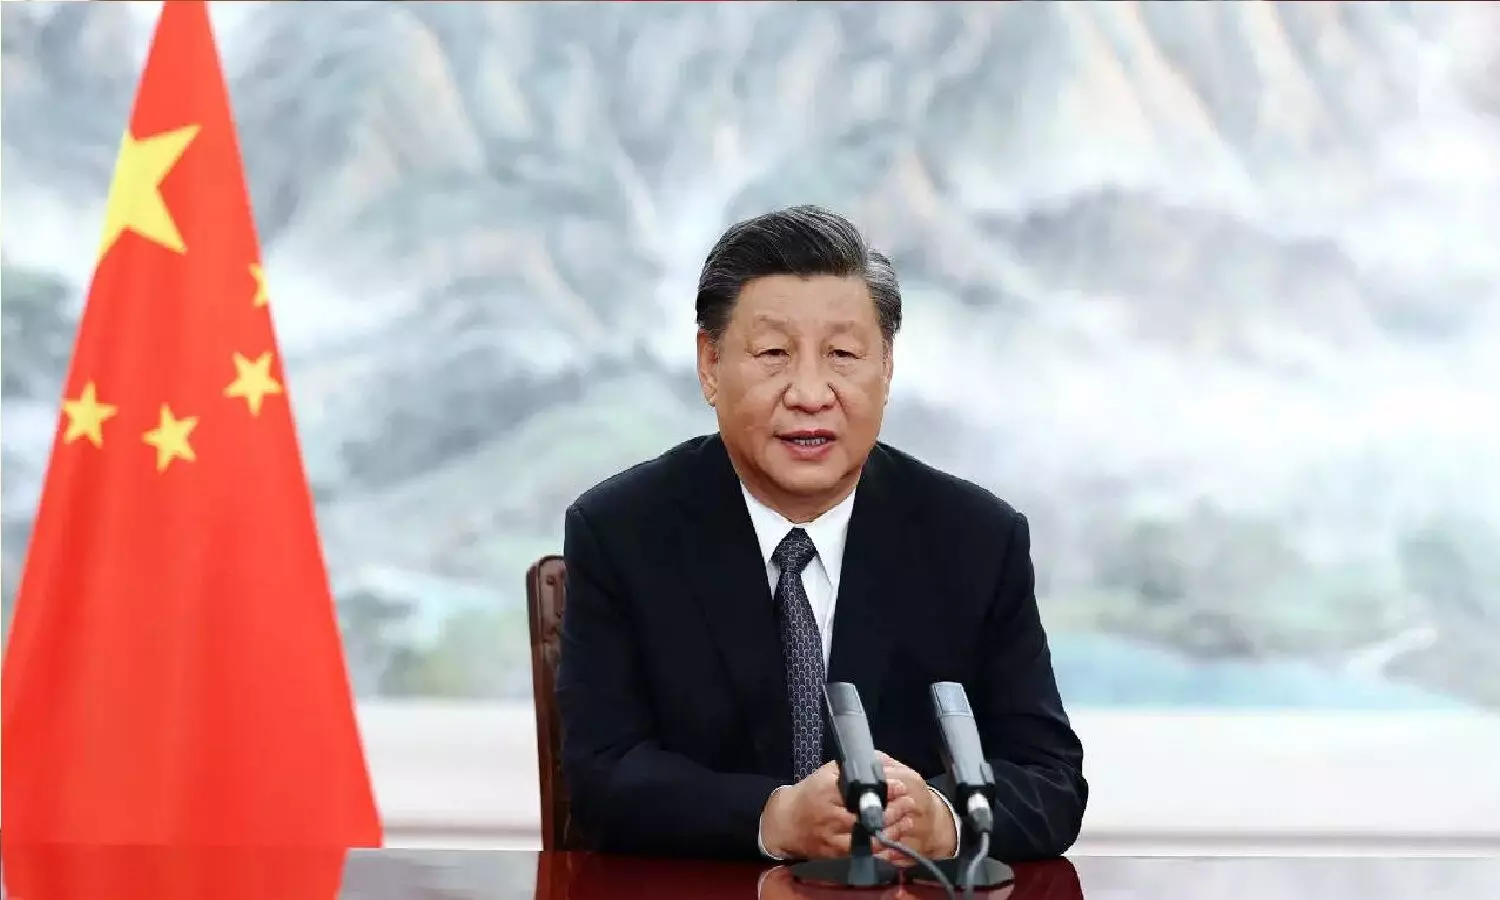 New President Of China: क्या Li Qiaoming चीन के नए राष्ट्रपति बन गए हैं? Twitter में क्या कह रहे लोग?